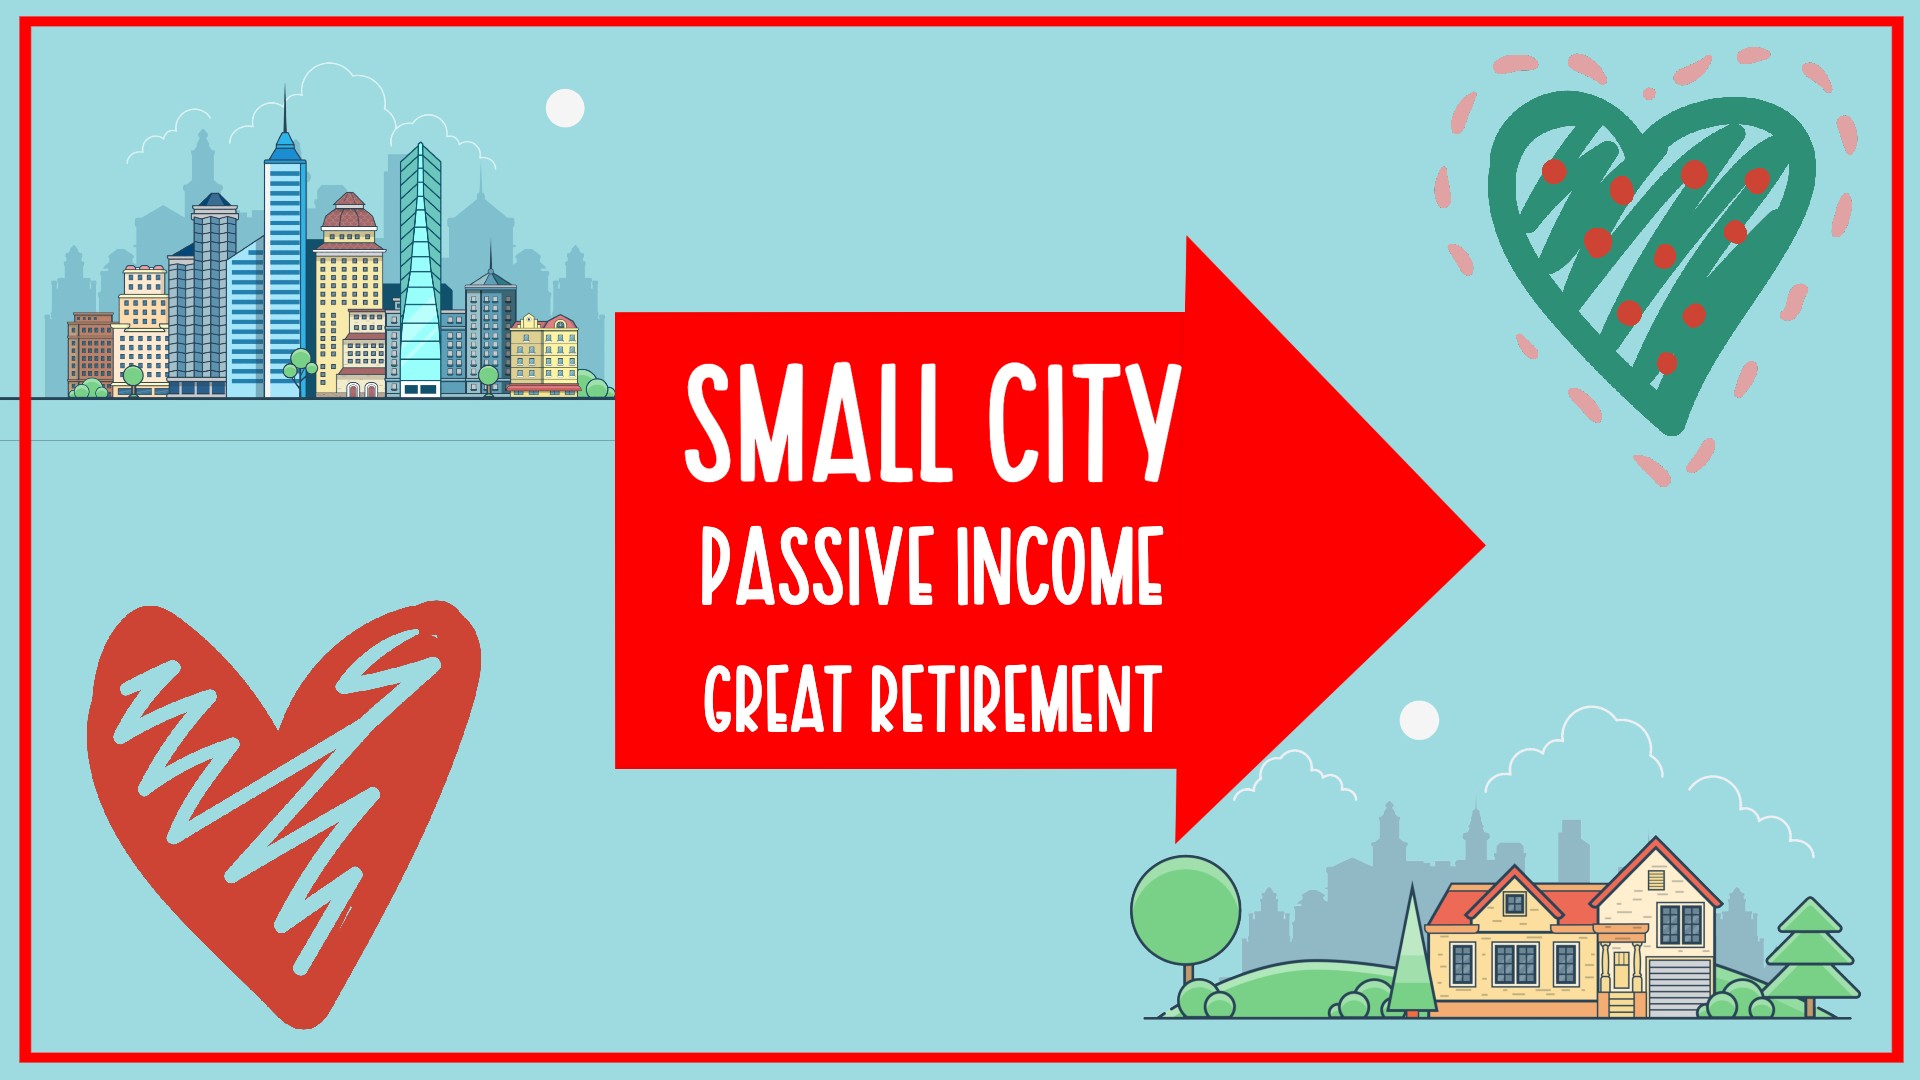 Small City. Passive Income. Great Retirement.